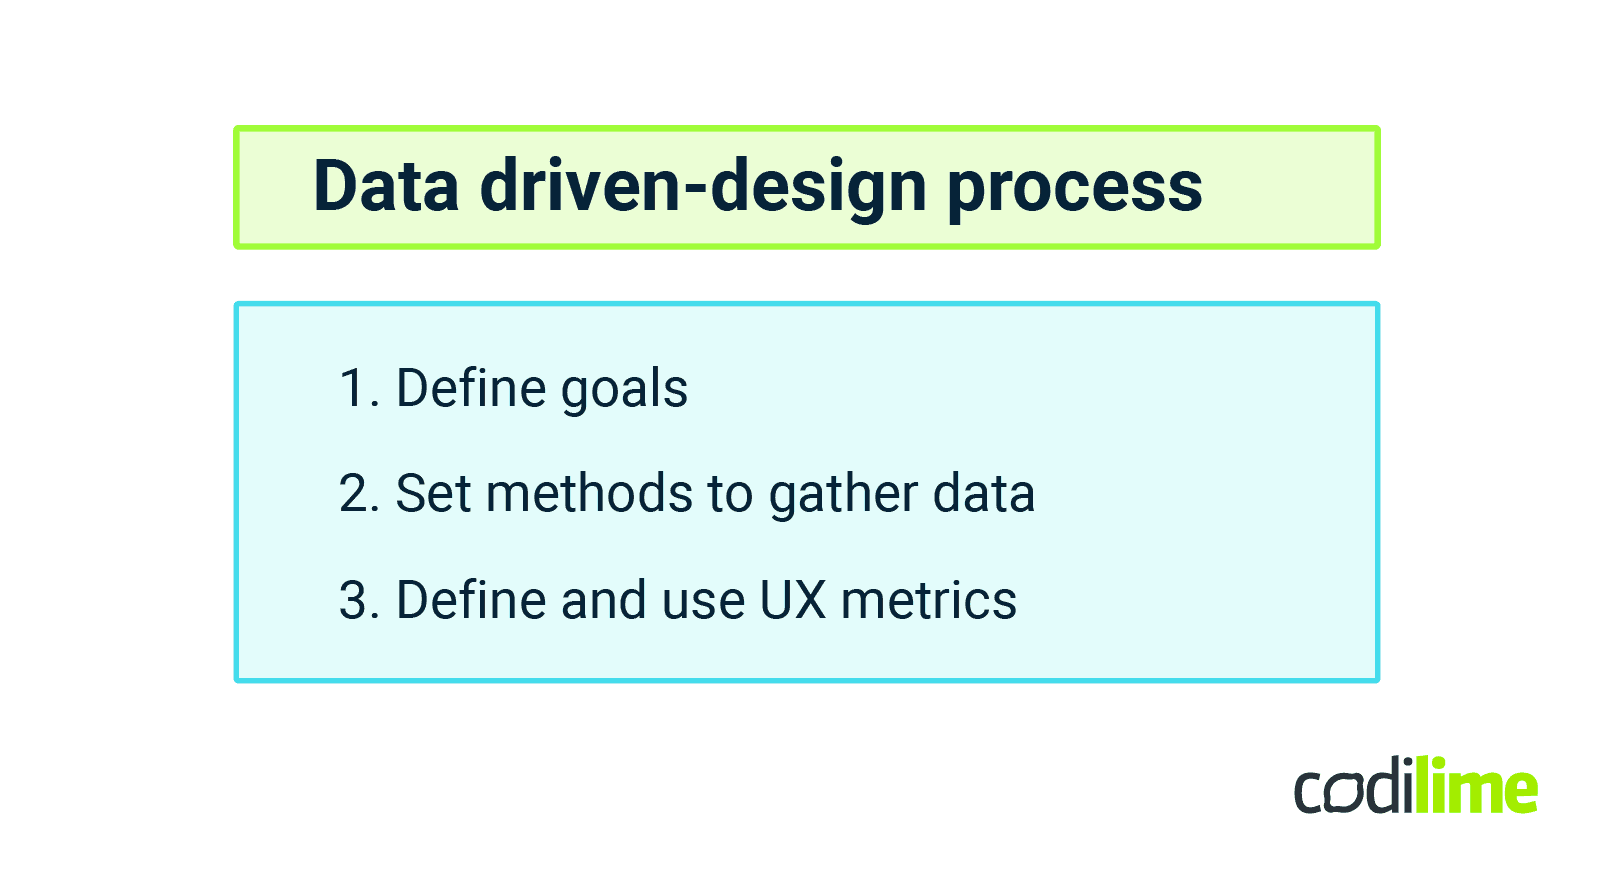  Data-driven design process  